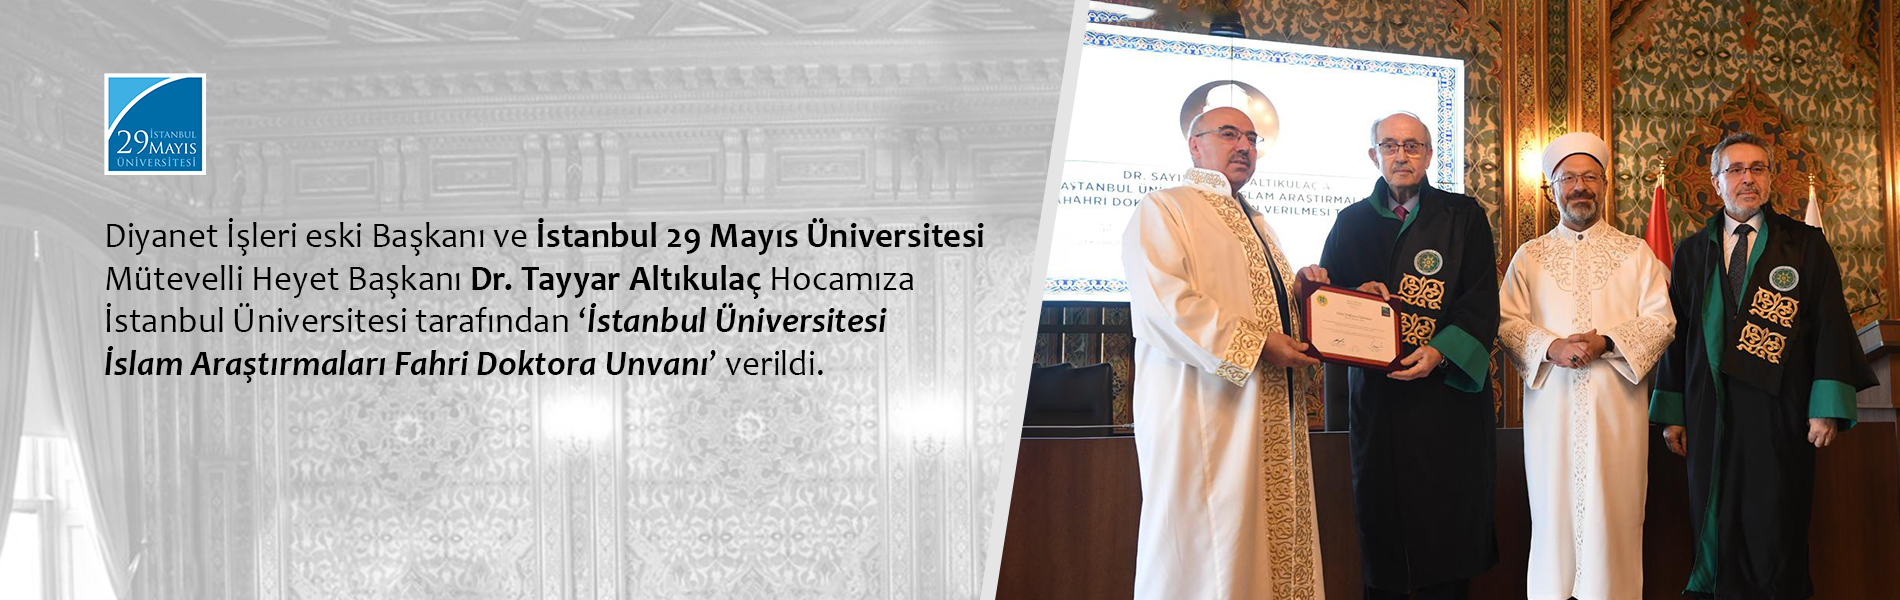 Dr. Tayyar Altıkulaç Hocamıza İstanbul Üniversitesi Tarafından "İstanbul Üniversitesi İslam Araştırmaları Fahri Doktora Unvanı" Verildi